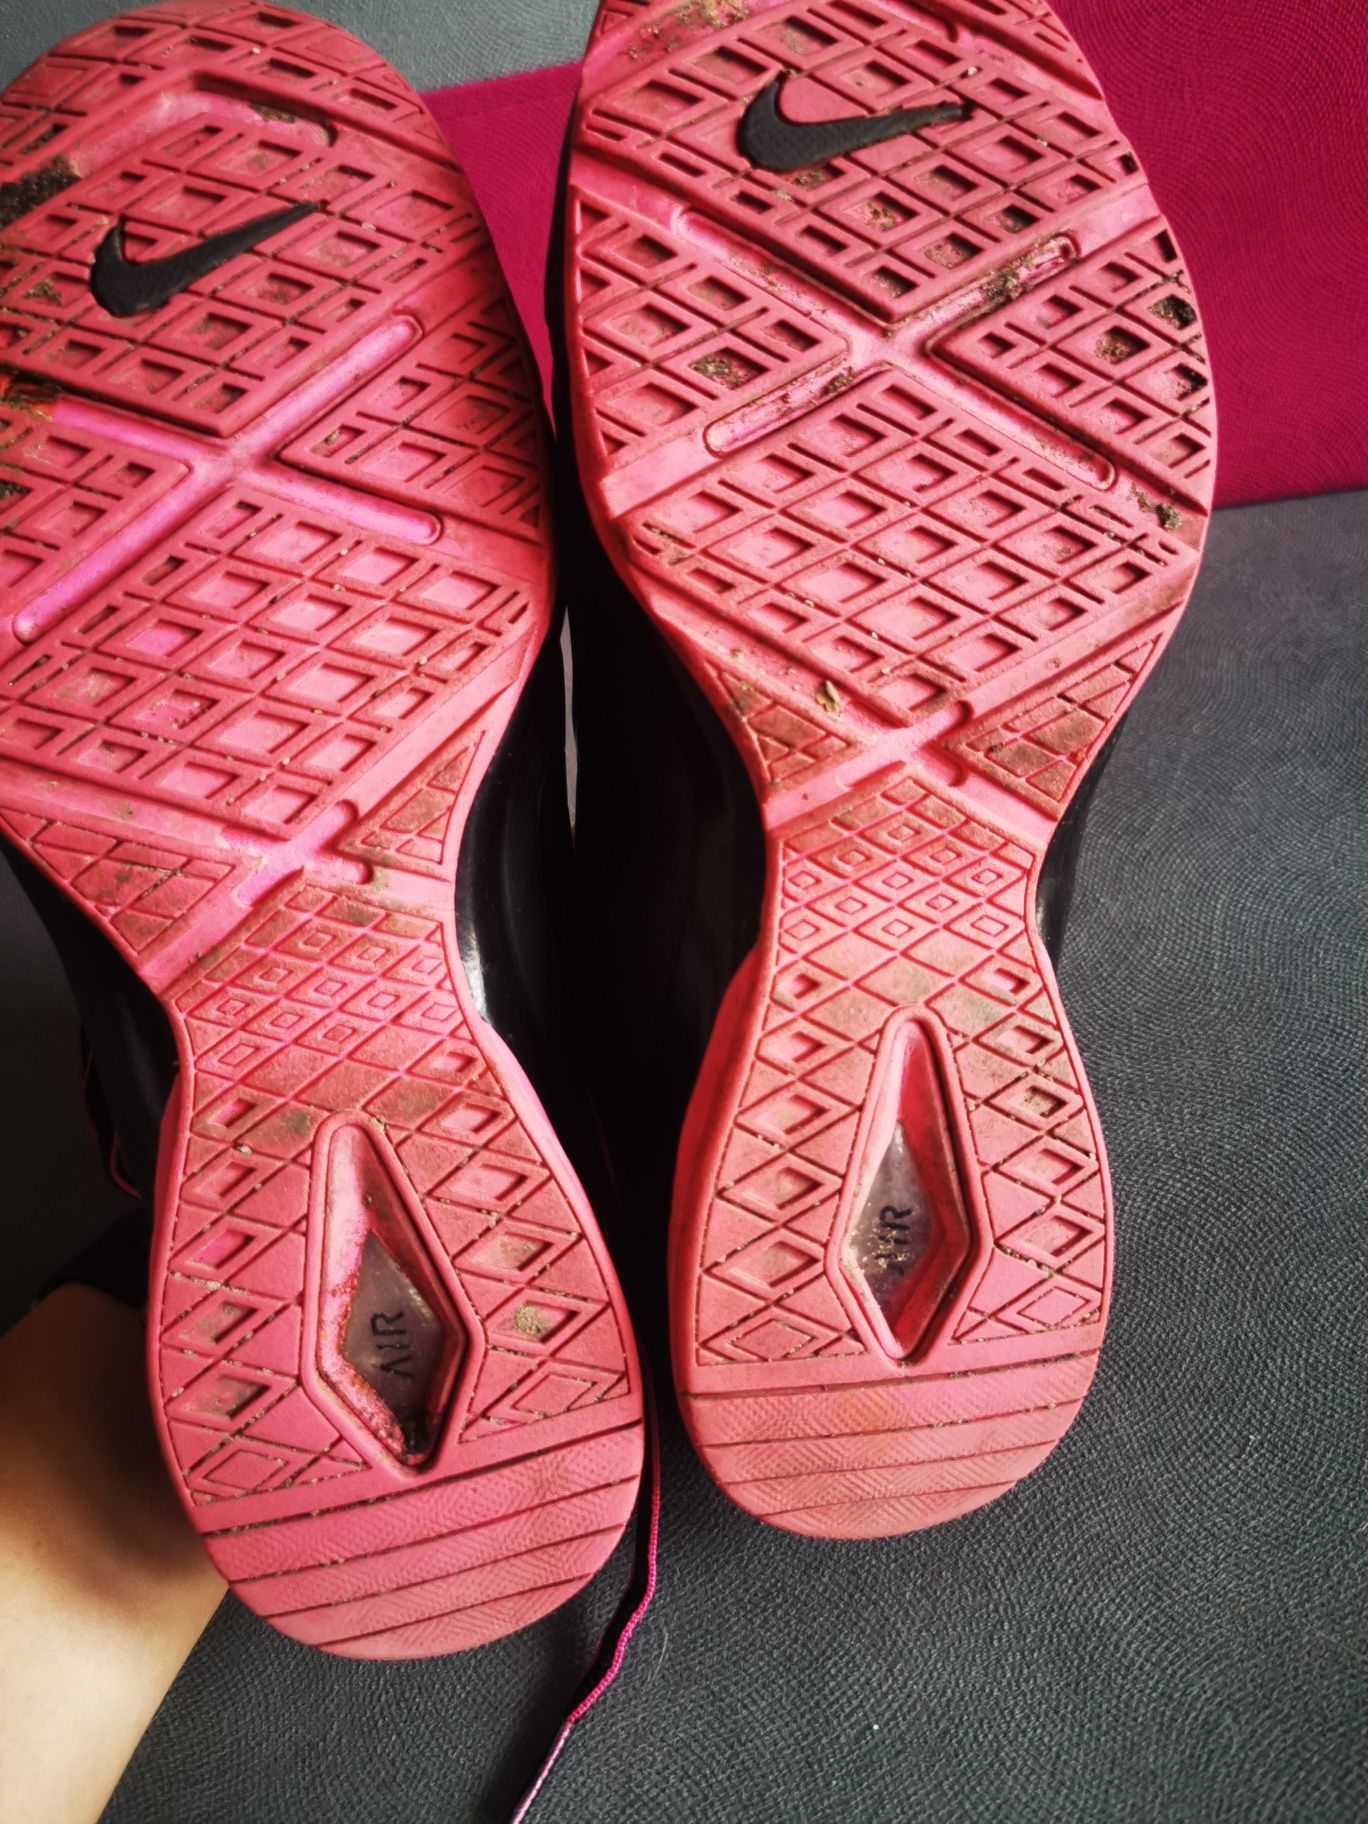 Adidasy Nike, Rom 38,5, bardzo zgrabne, czarno różowe